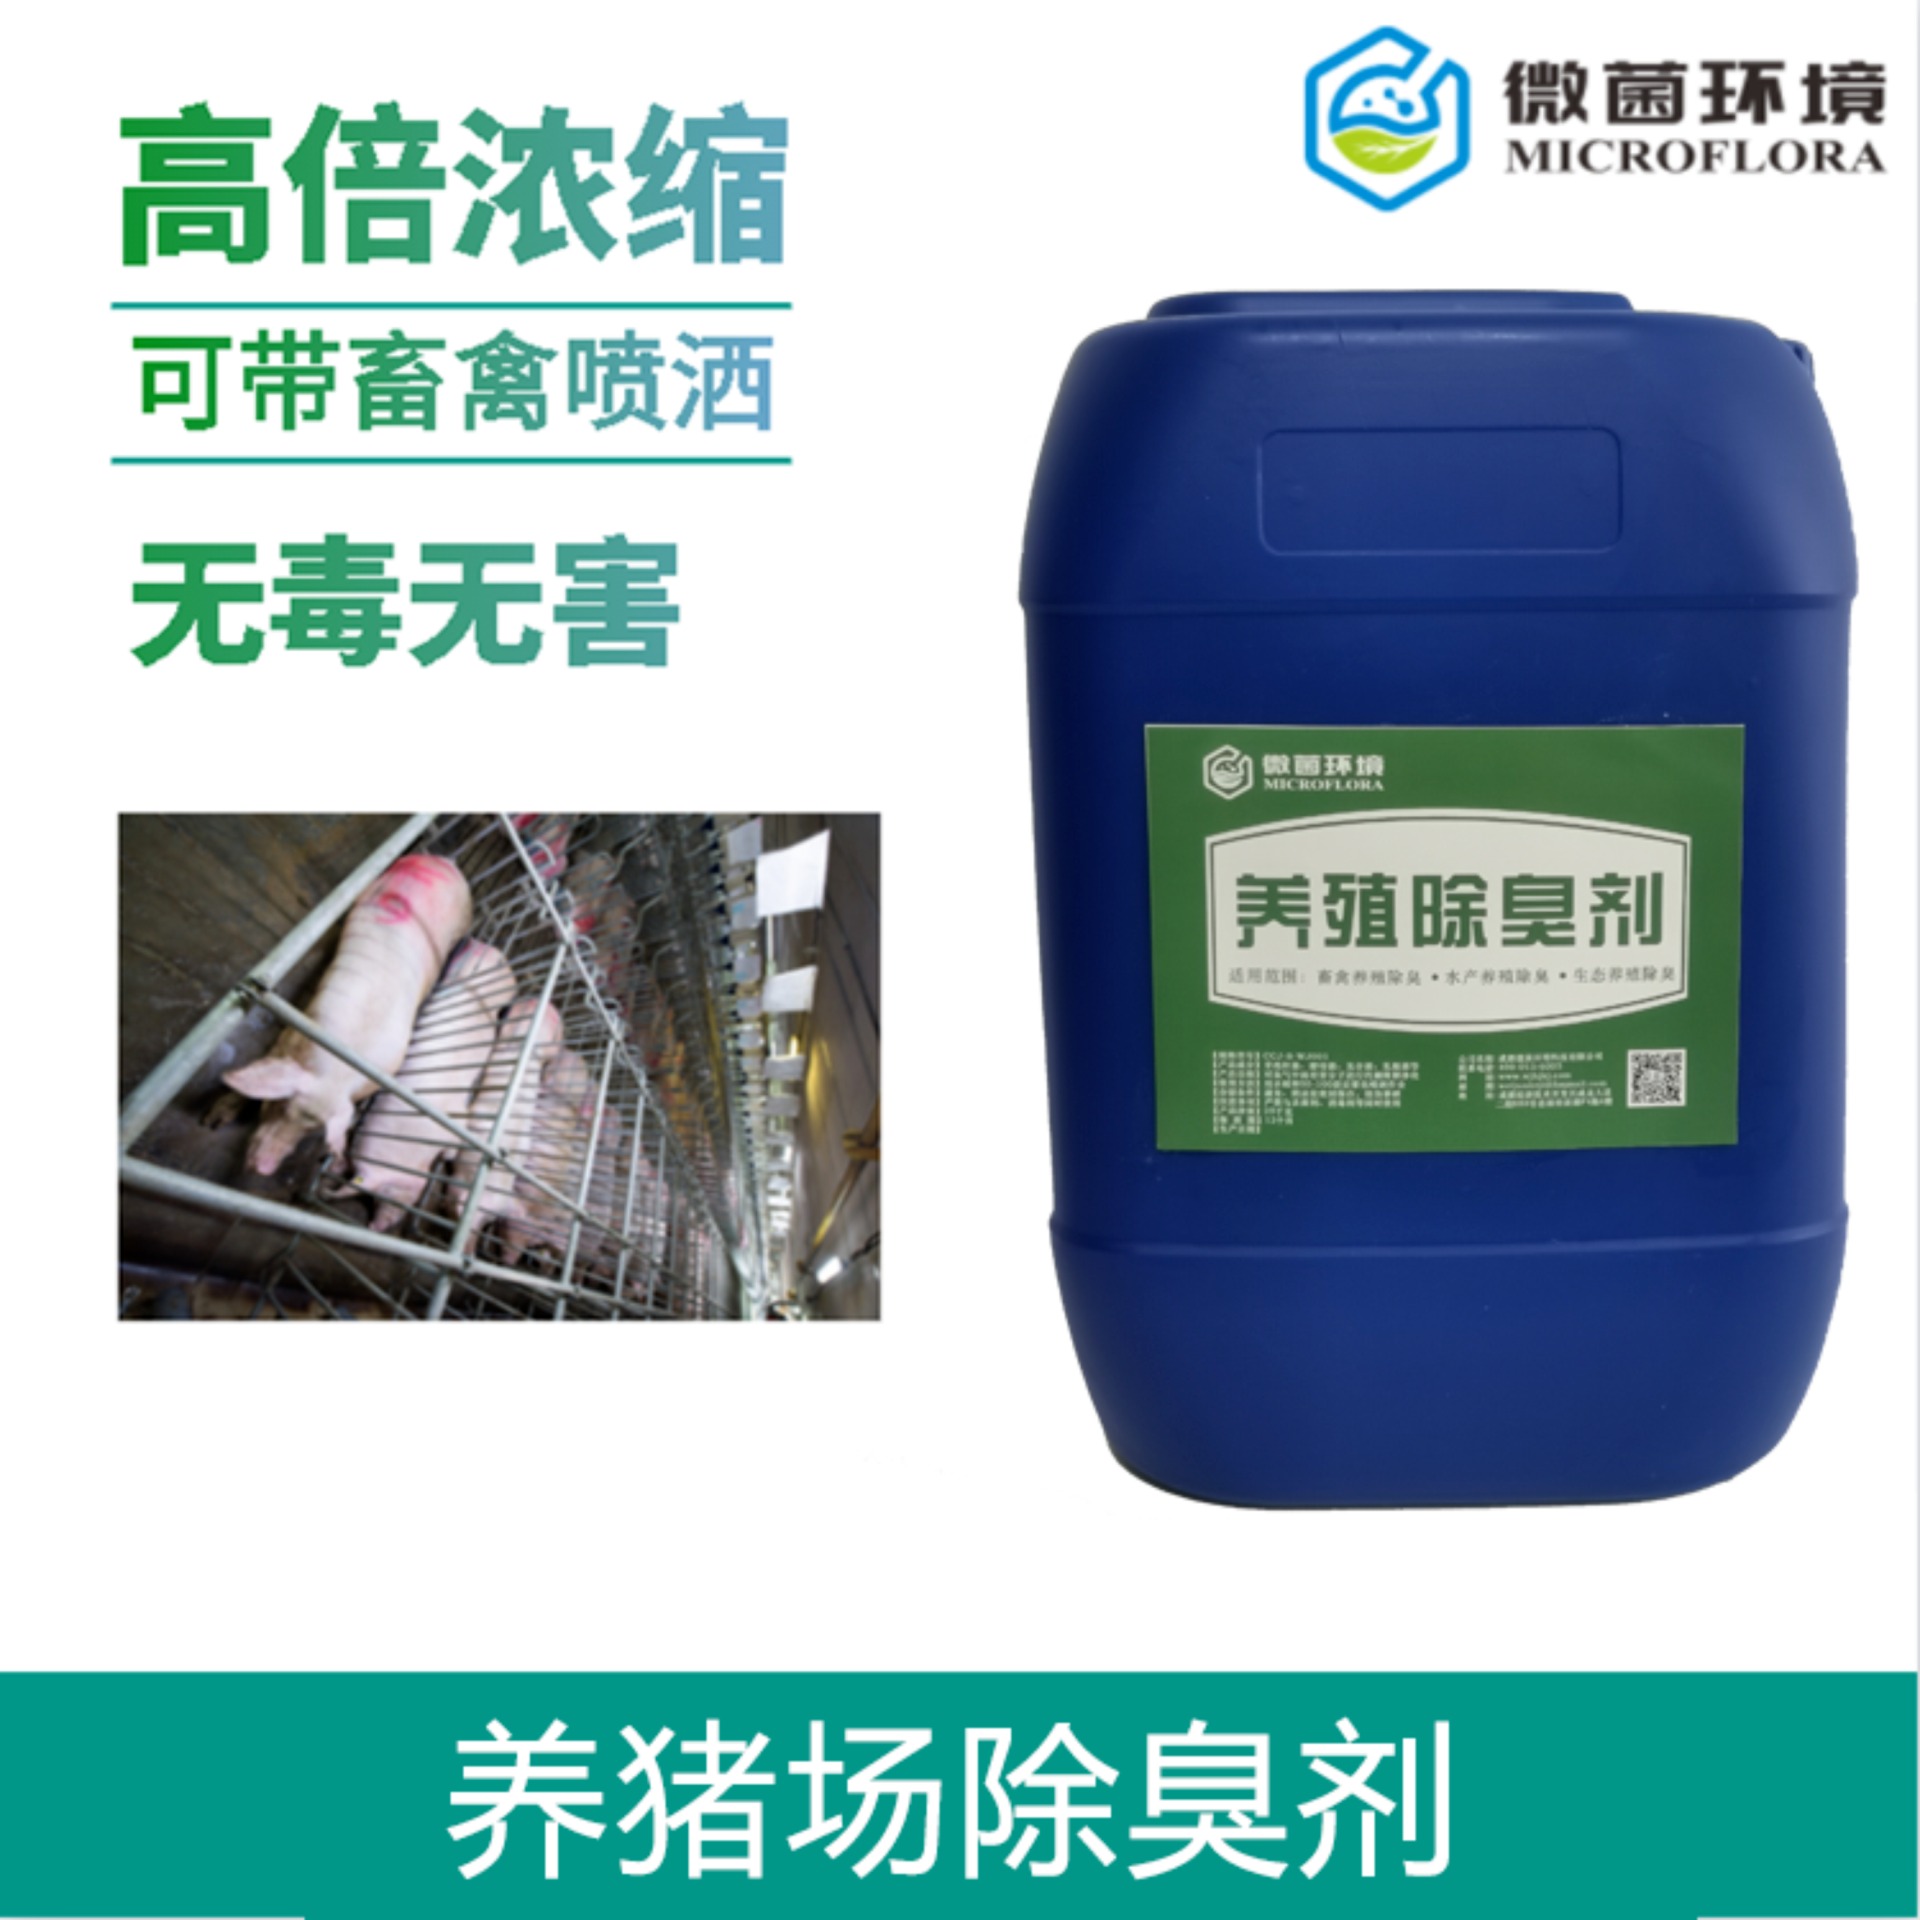 厂家供应 价格优惠 微菌 生物型 养猪场专用除臭剂